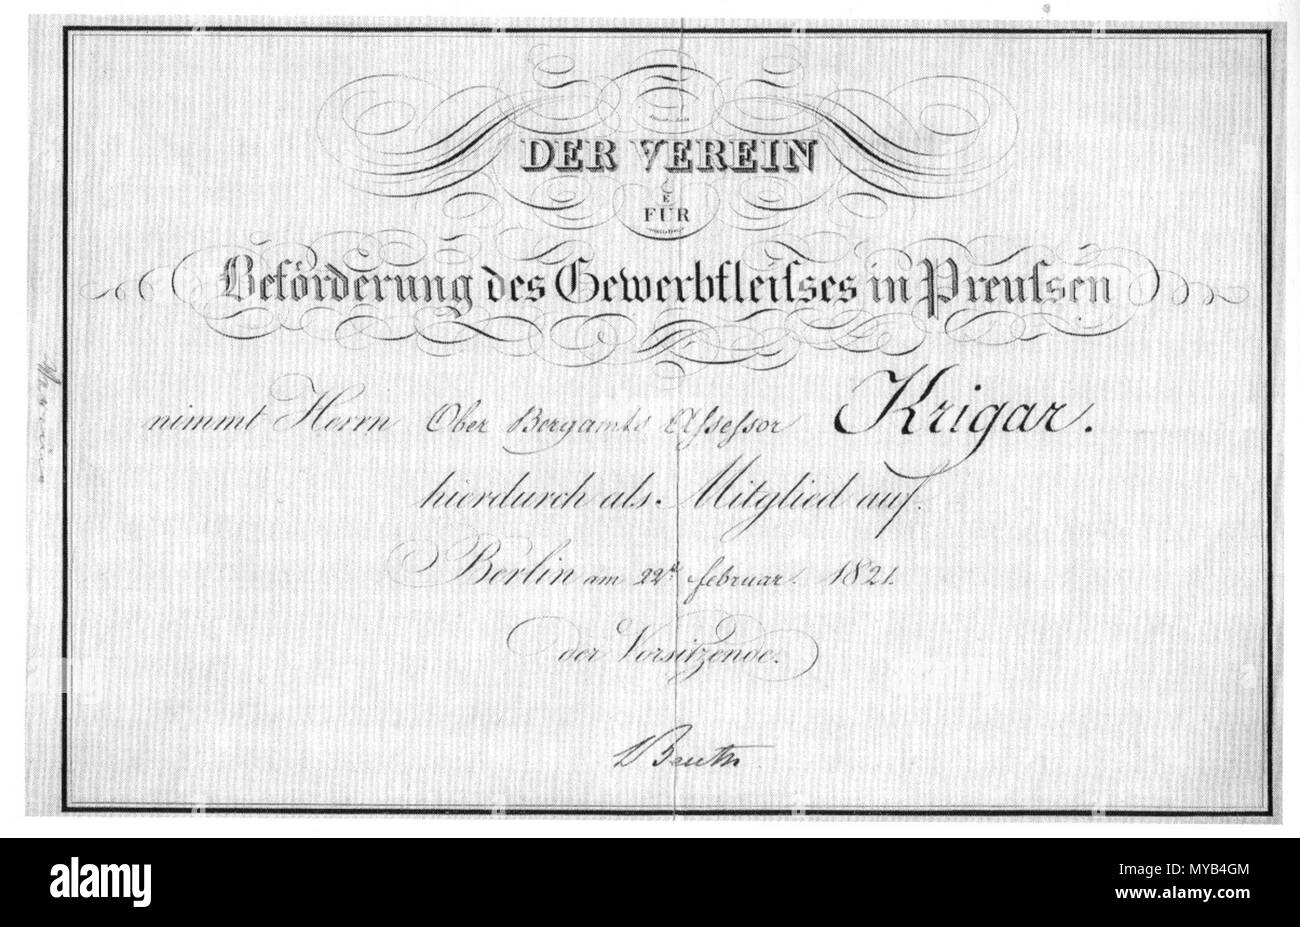 . Mitgliedschaft - Karte für Johann Friedrich Krigar, signiert "Beuth". 1821. Kupfer - Gravur von Schmidt 73 Beuth Mitgliedskarte Stockfoto